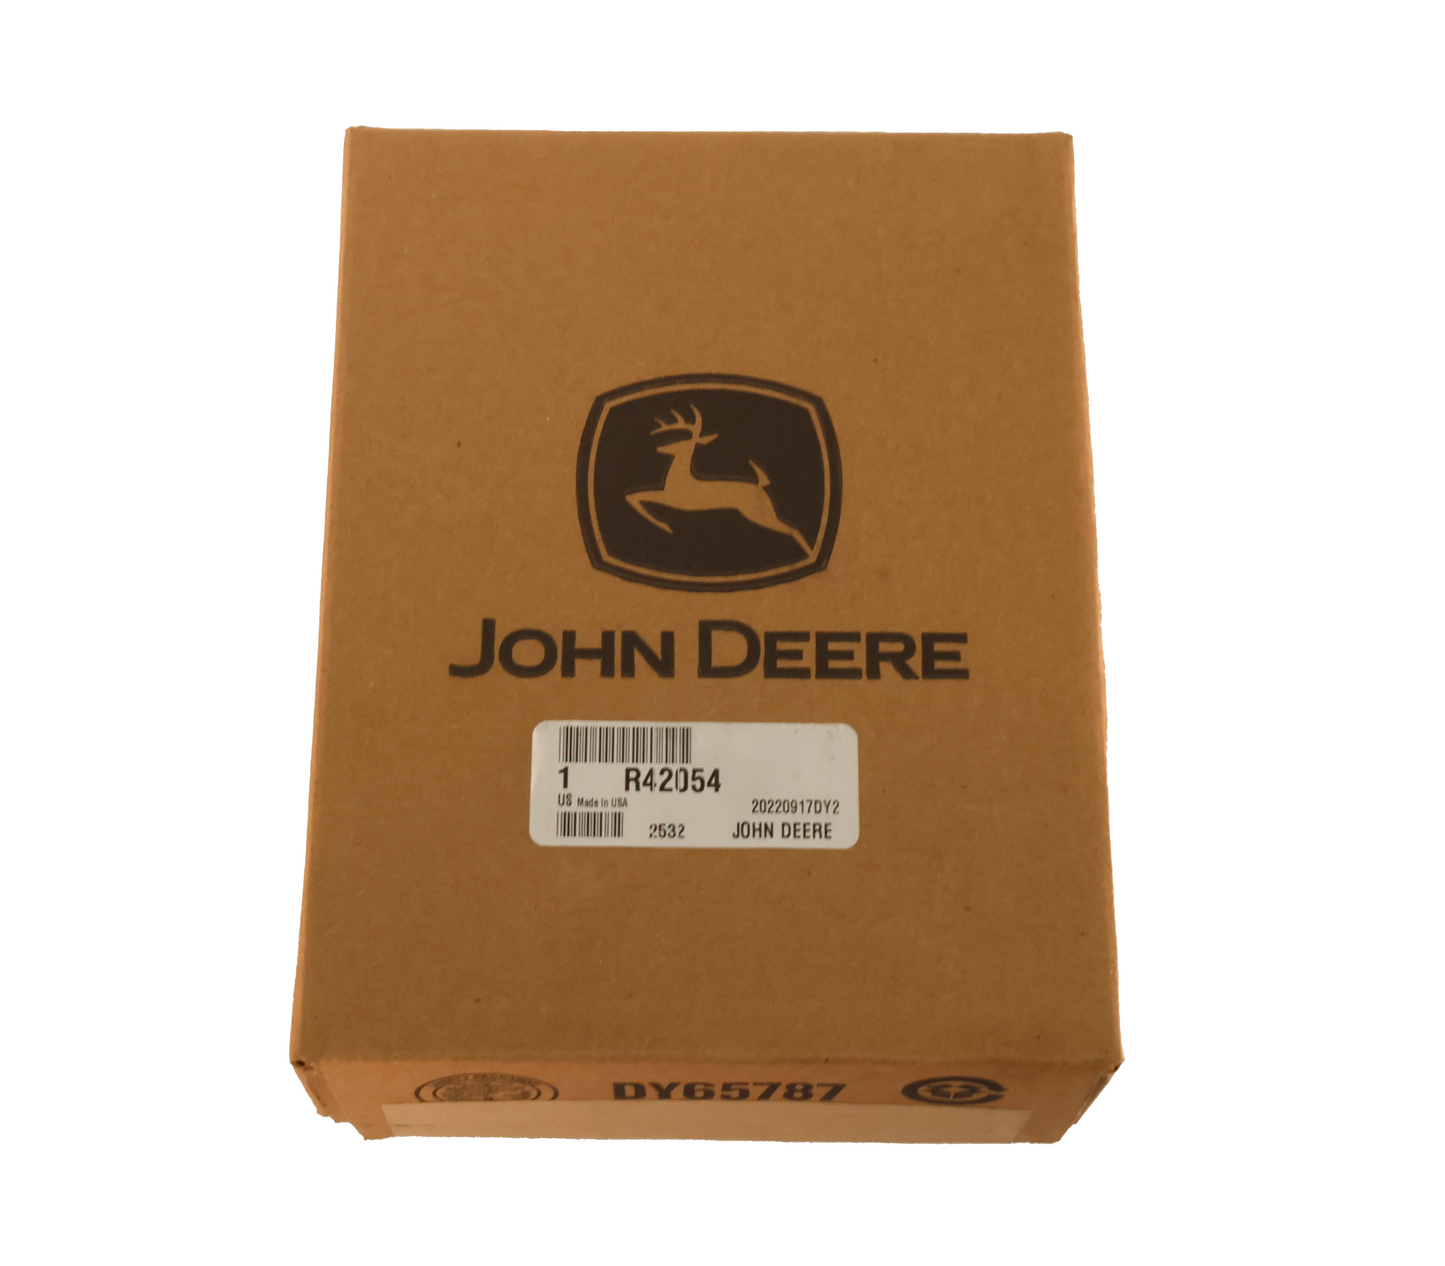 John Deere Original Equipment Cover - R42054